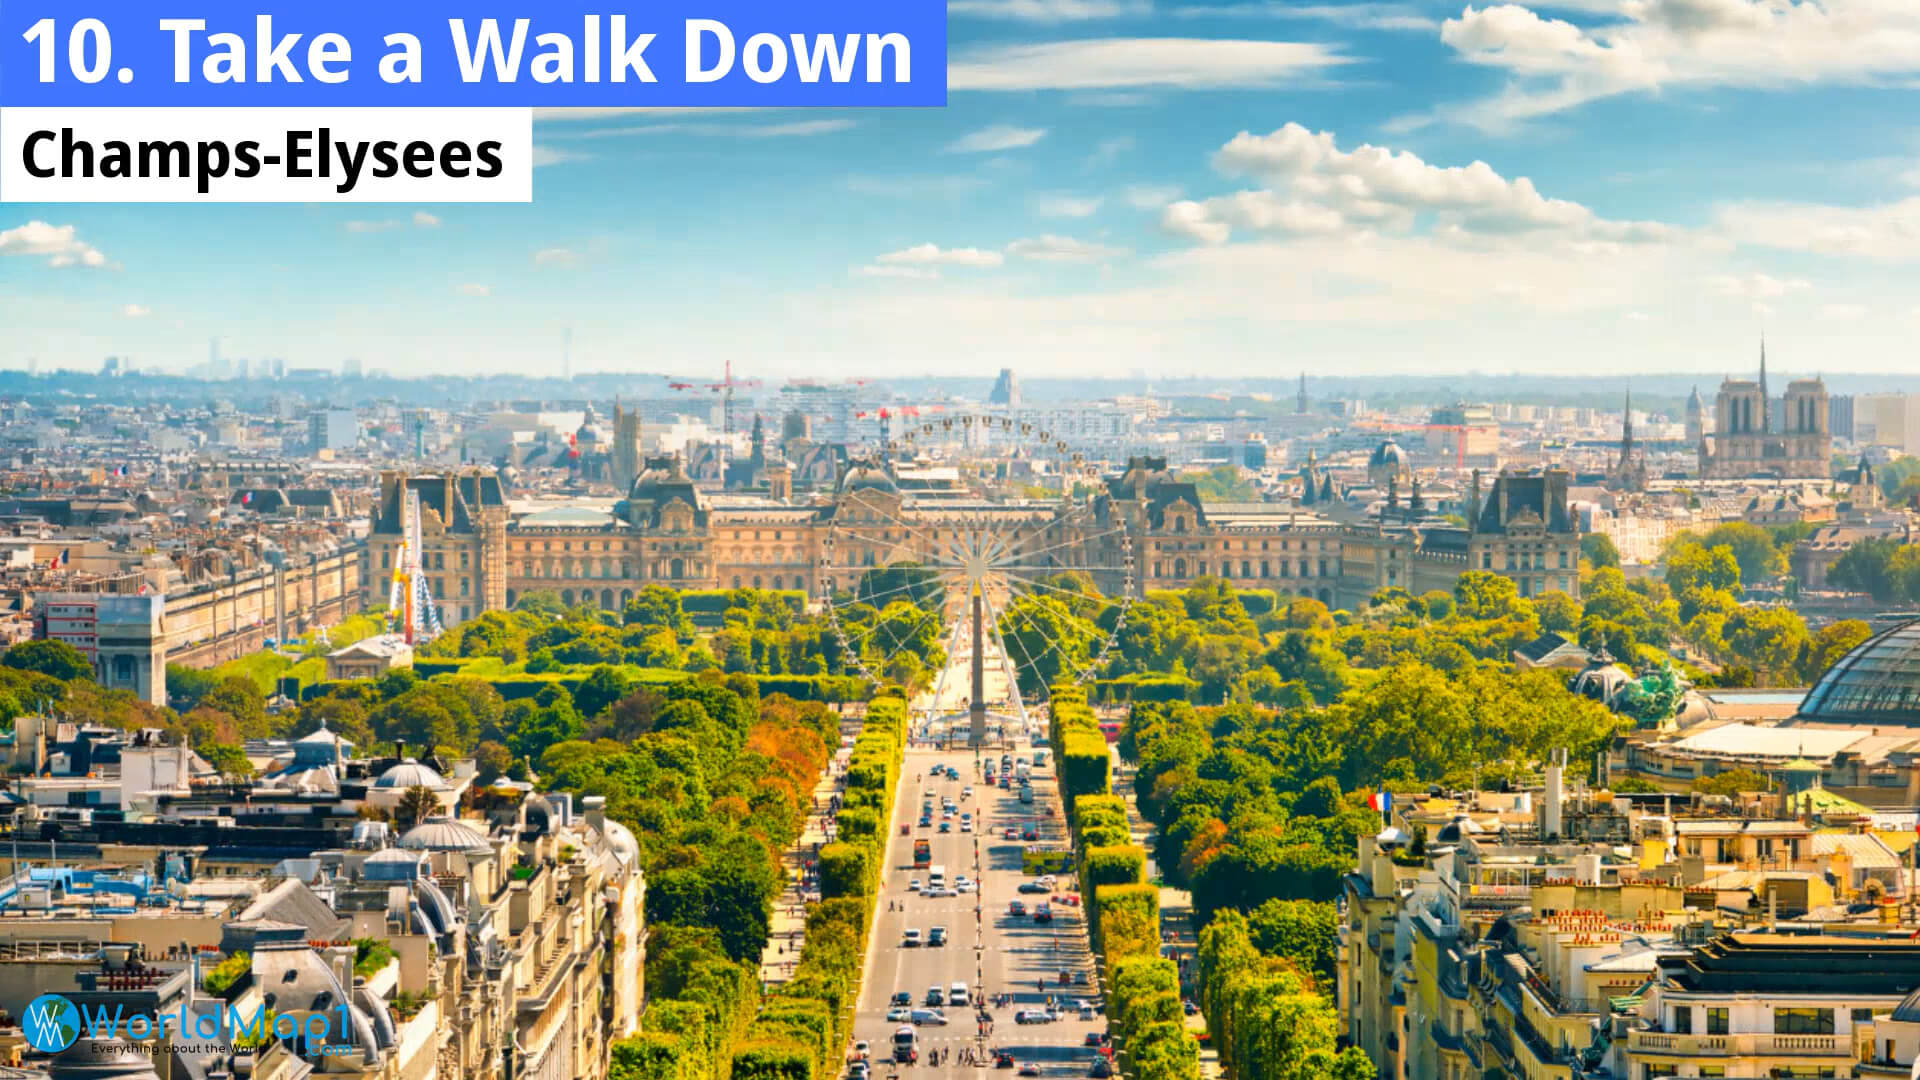 Take a Walk Down Champs-Elysees